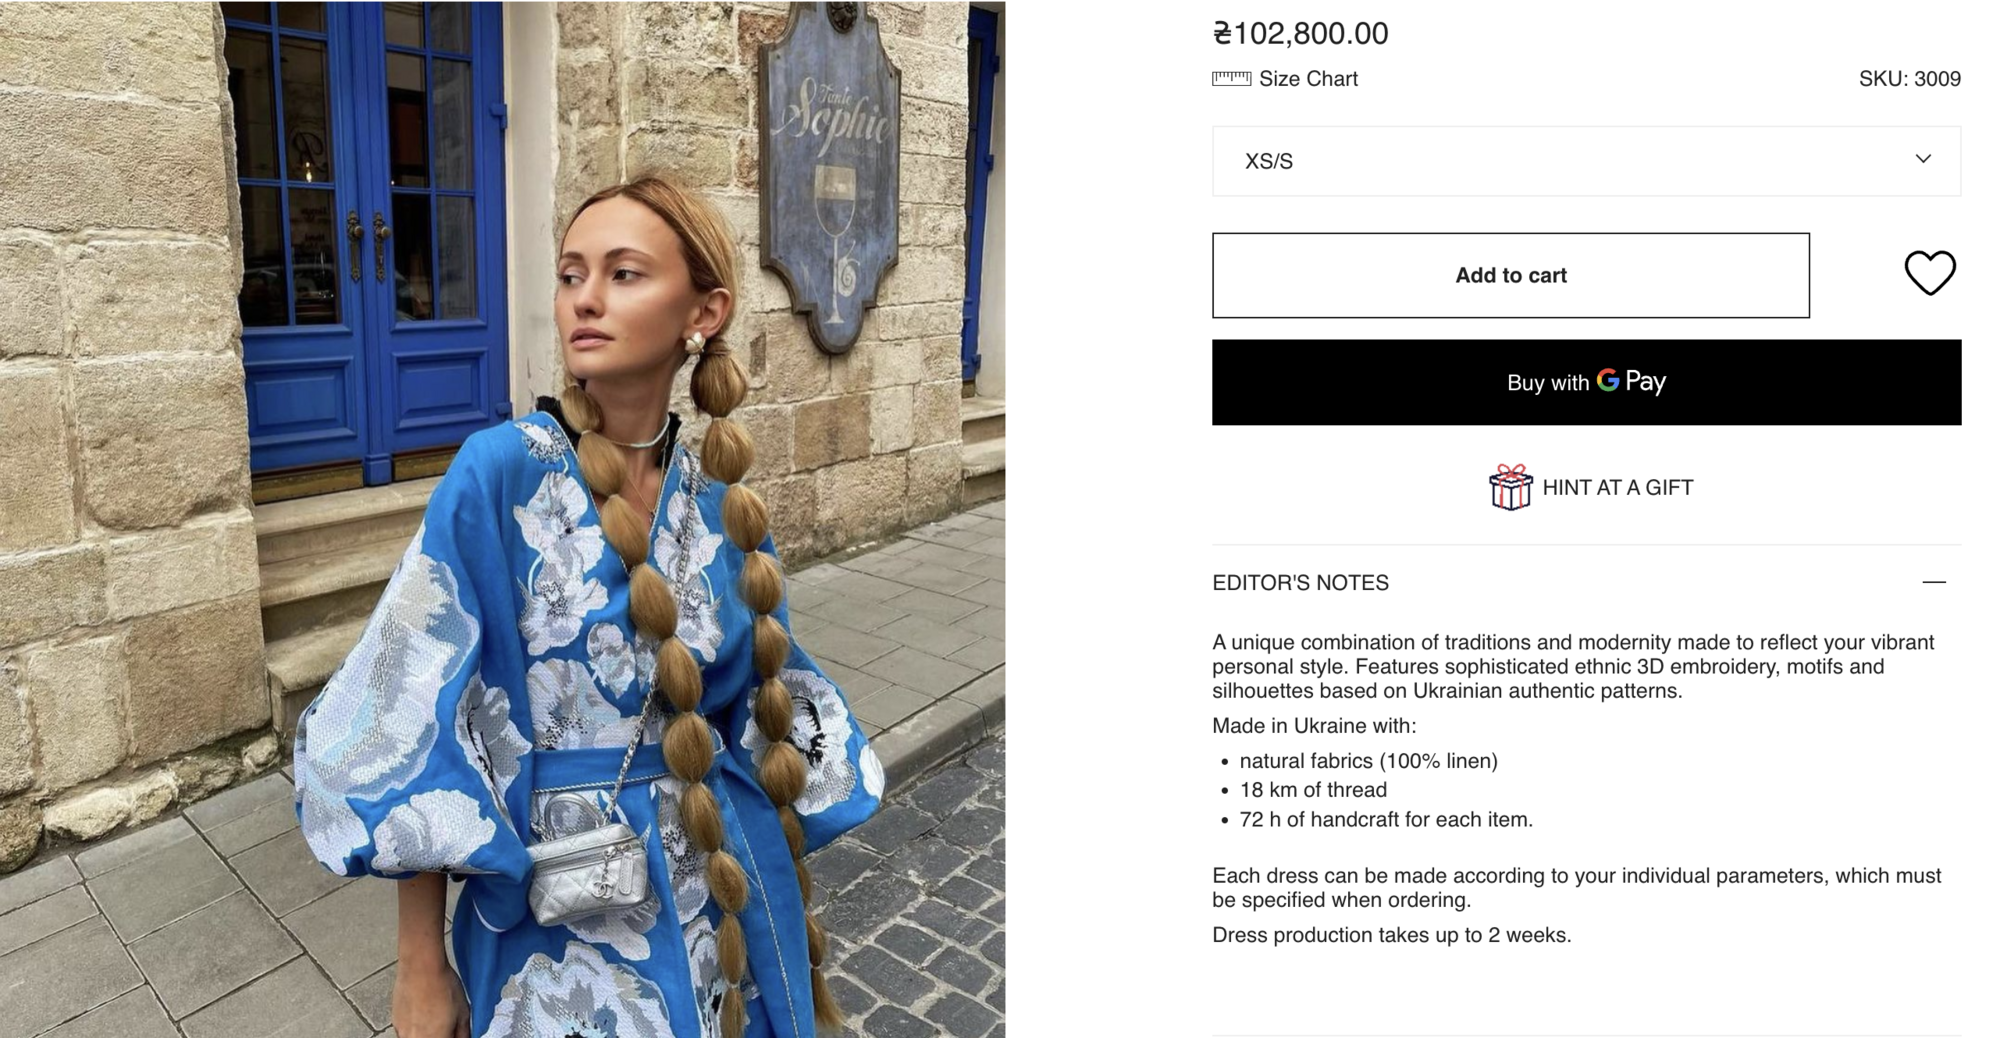 Звезда "Сплетницы" вышла в свет в платье-вышиванке украинского бренда за 102 тыс. грн